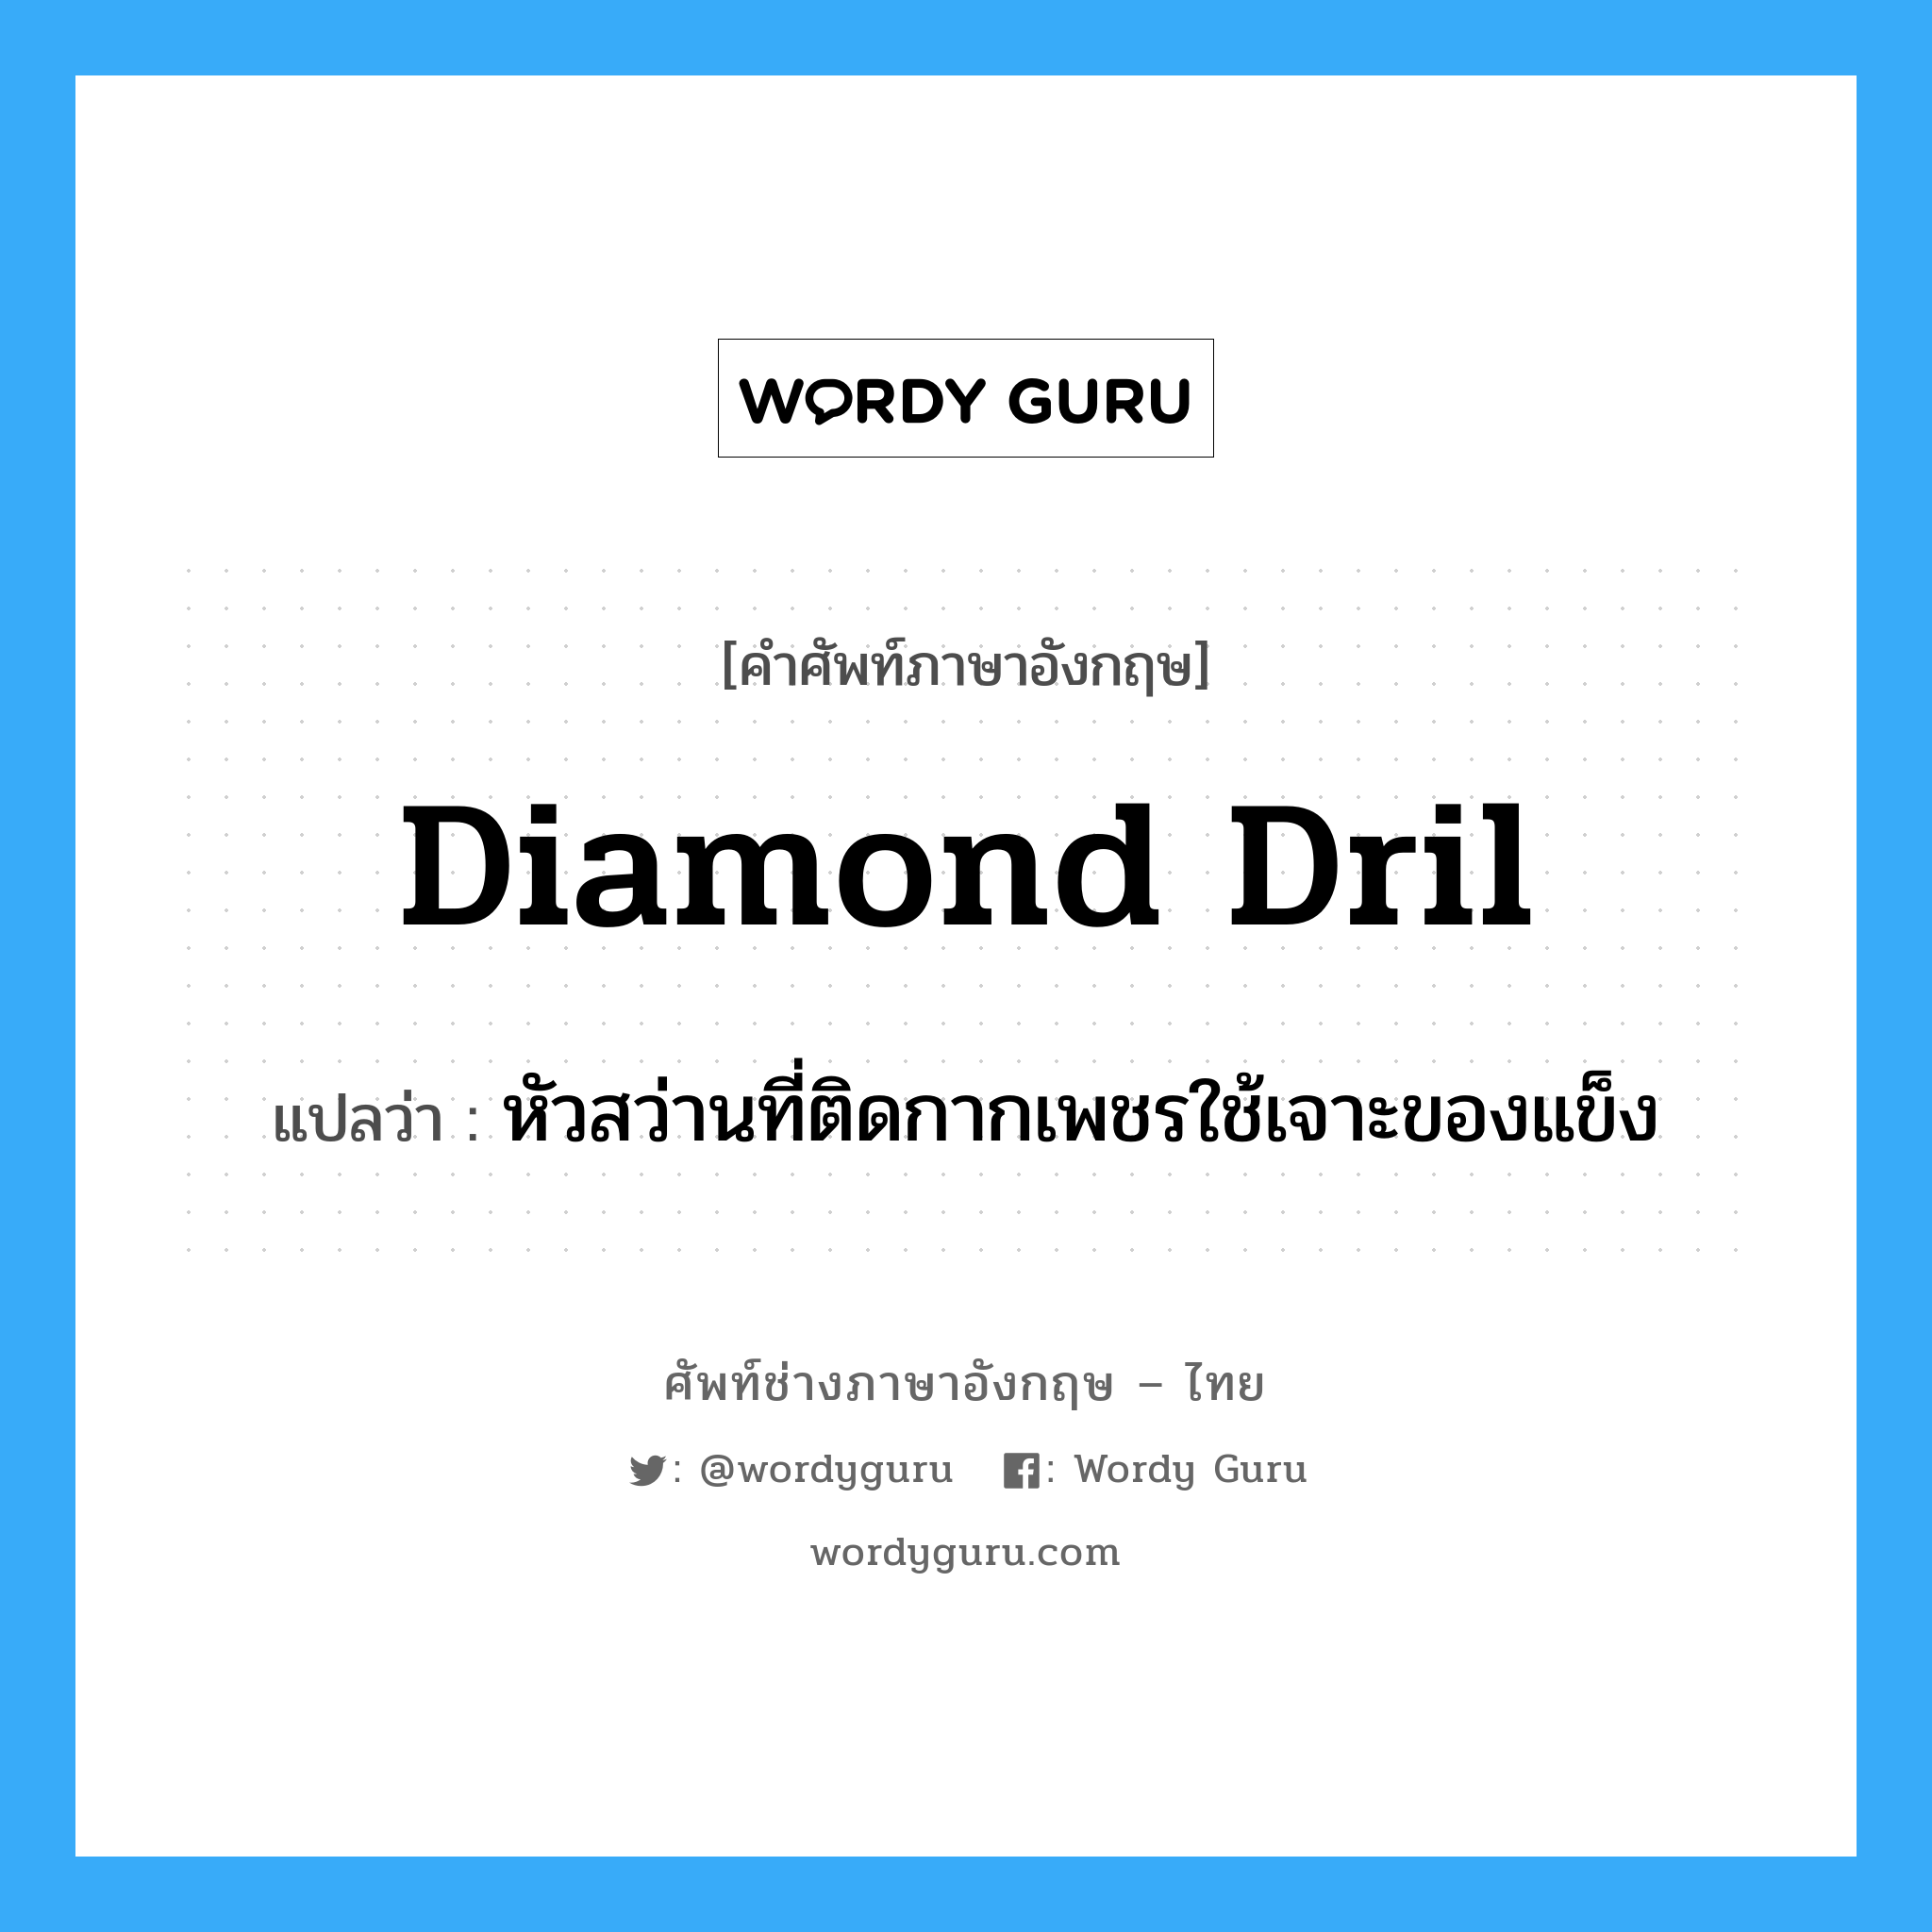 diamond dril แปลว่า?, คำศัพท์ช่างภาษาอังกฤษ - ไทย diamond dril คำศัพท์ภาษาอังกฤษ diamond dril แปลว่า หัวสว่านที่ติดกากเพชรใช้เจาะของแข็ง